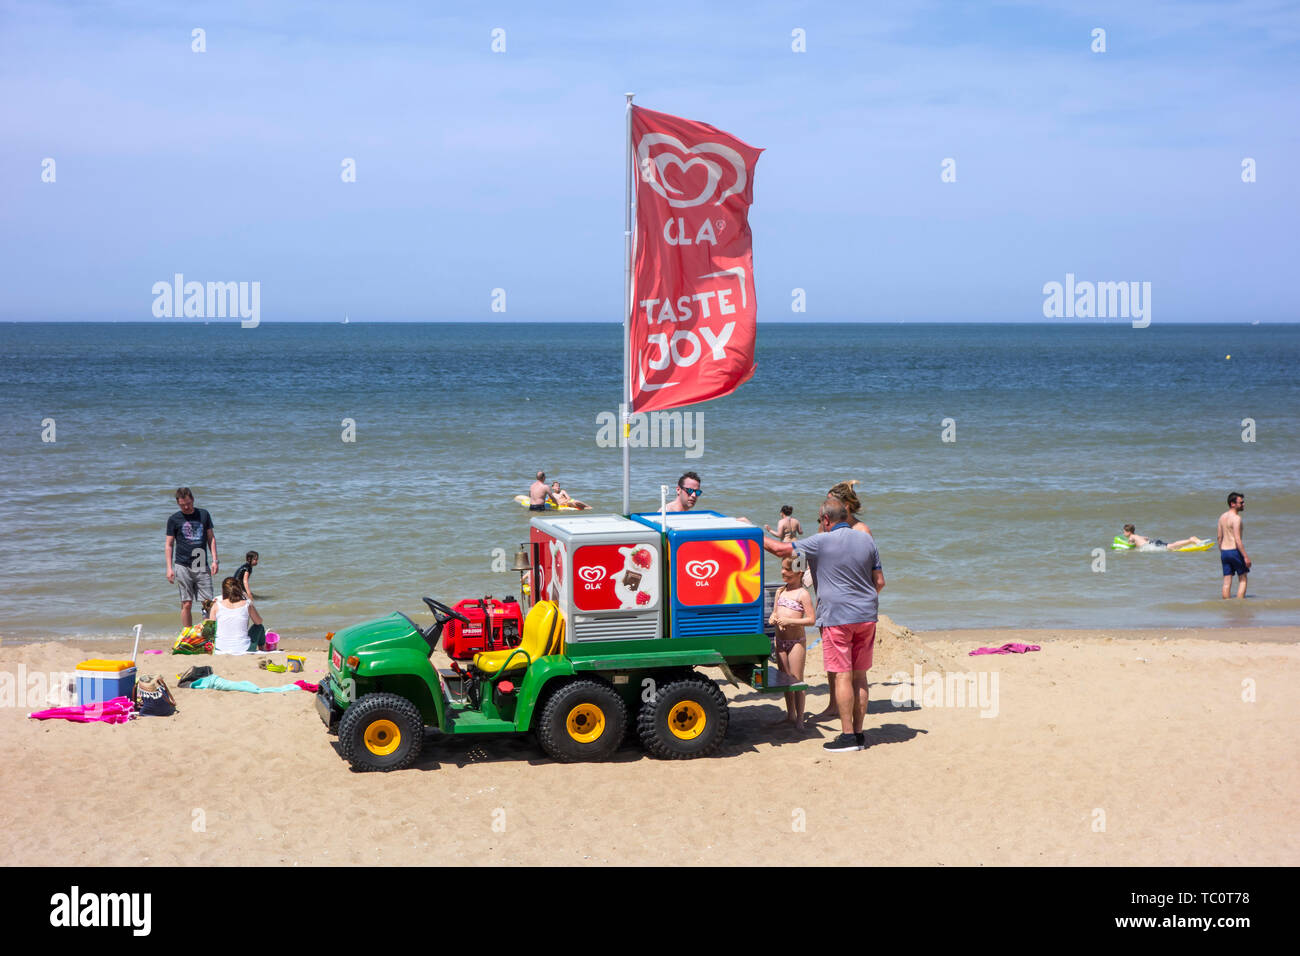 John Deere Gator trasformato in gelato carrello vendita di gelati ai turisti sulla spiaggia di località balneare lungo la costa del Mare del Nord Foto Stock